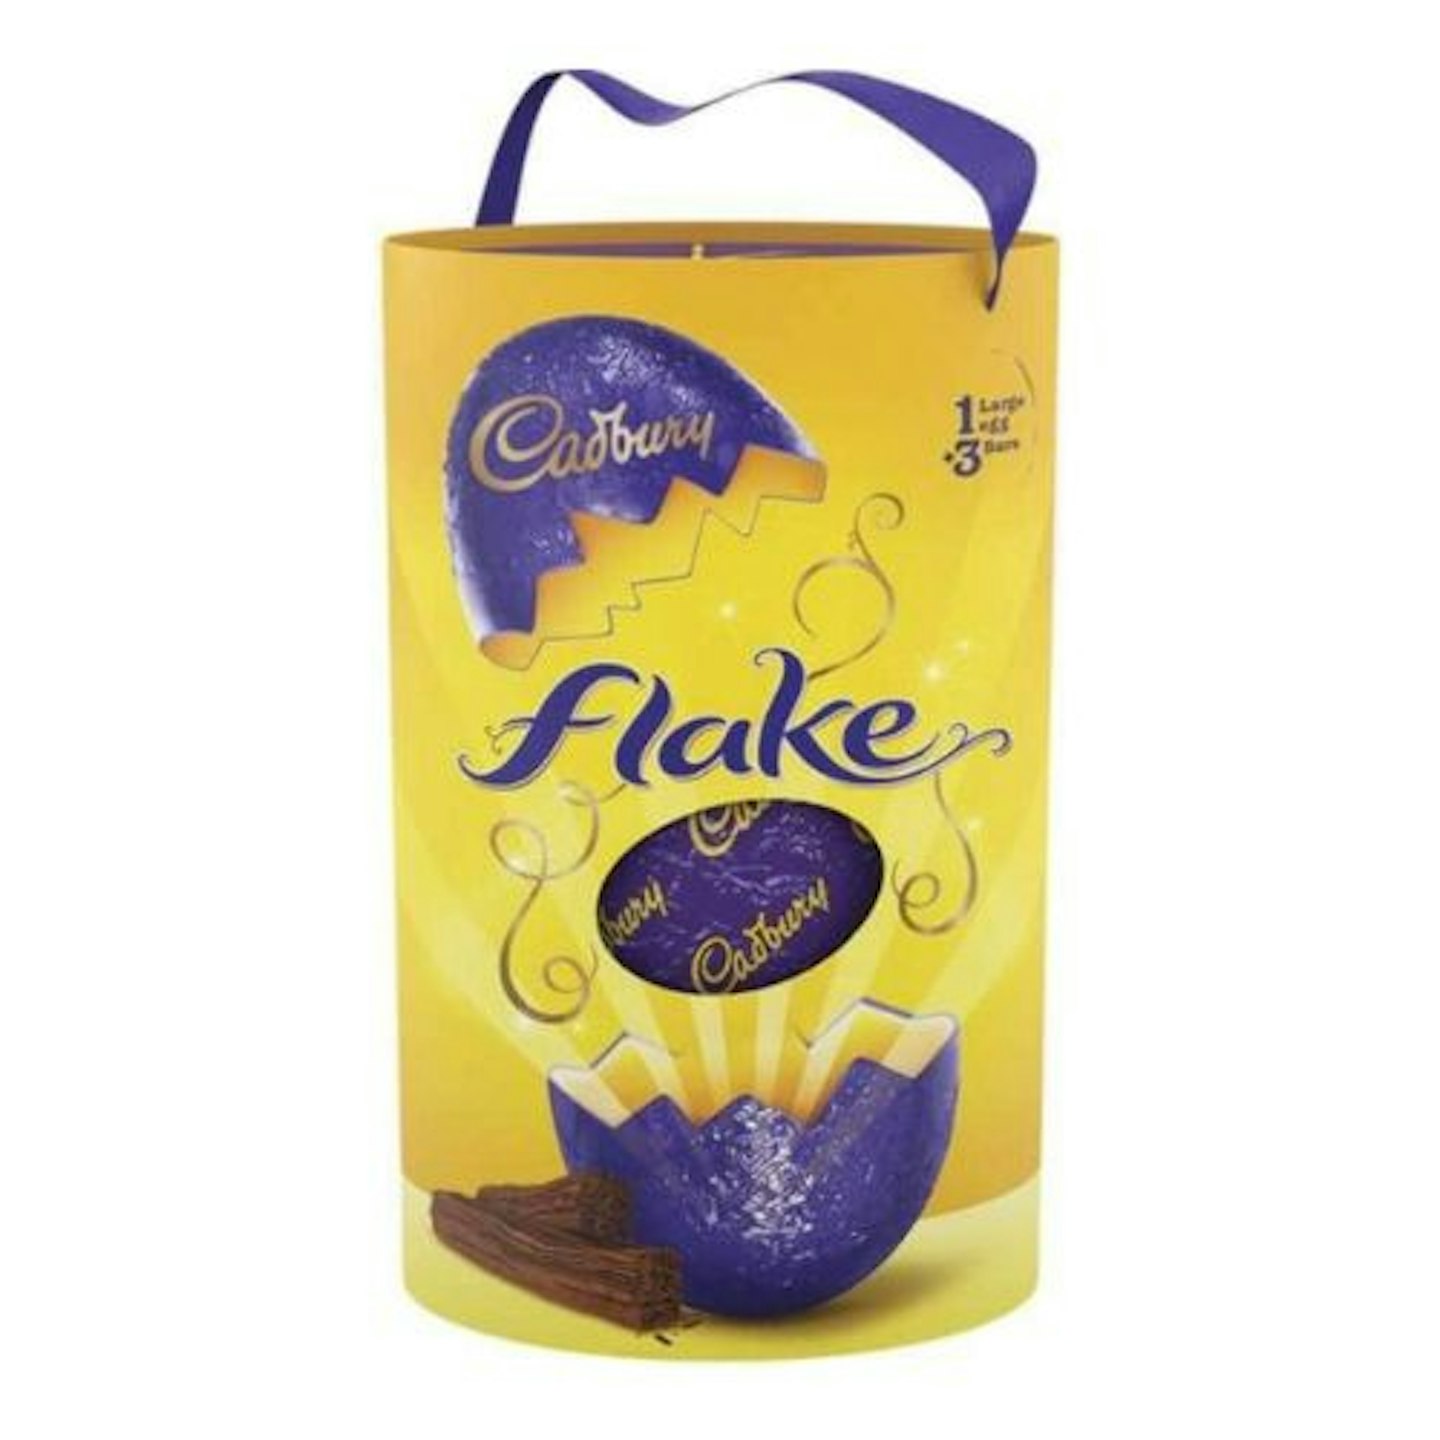 Cadbury Flake Large Chocolate Easter Egg, 249g